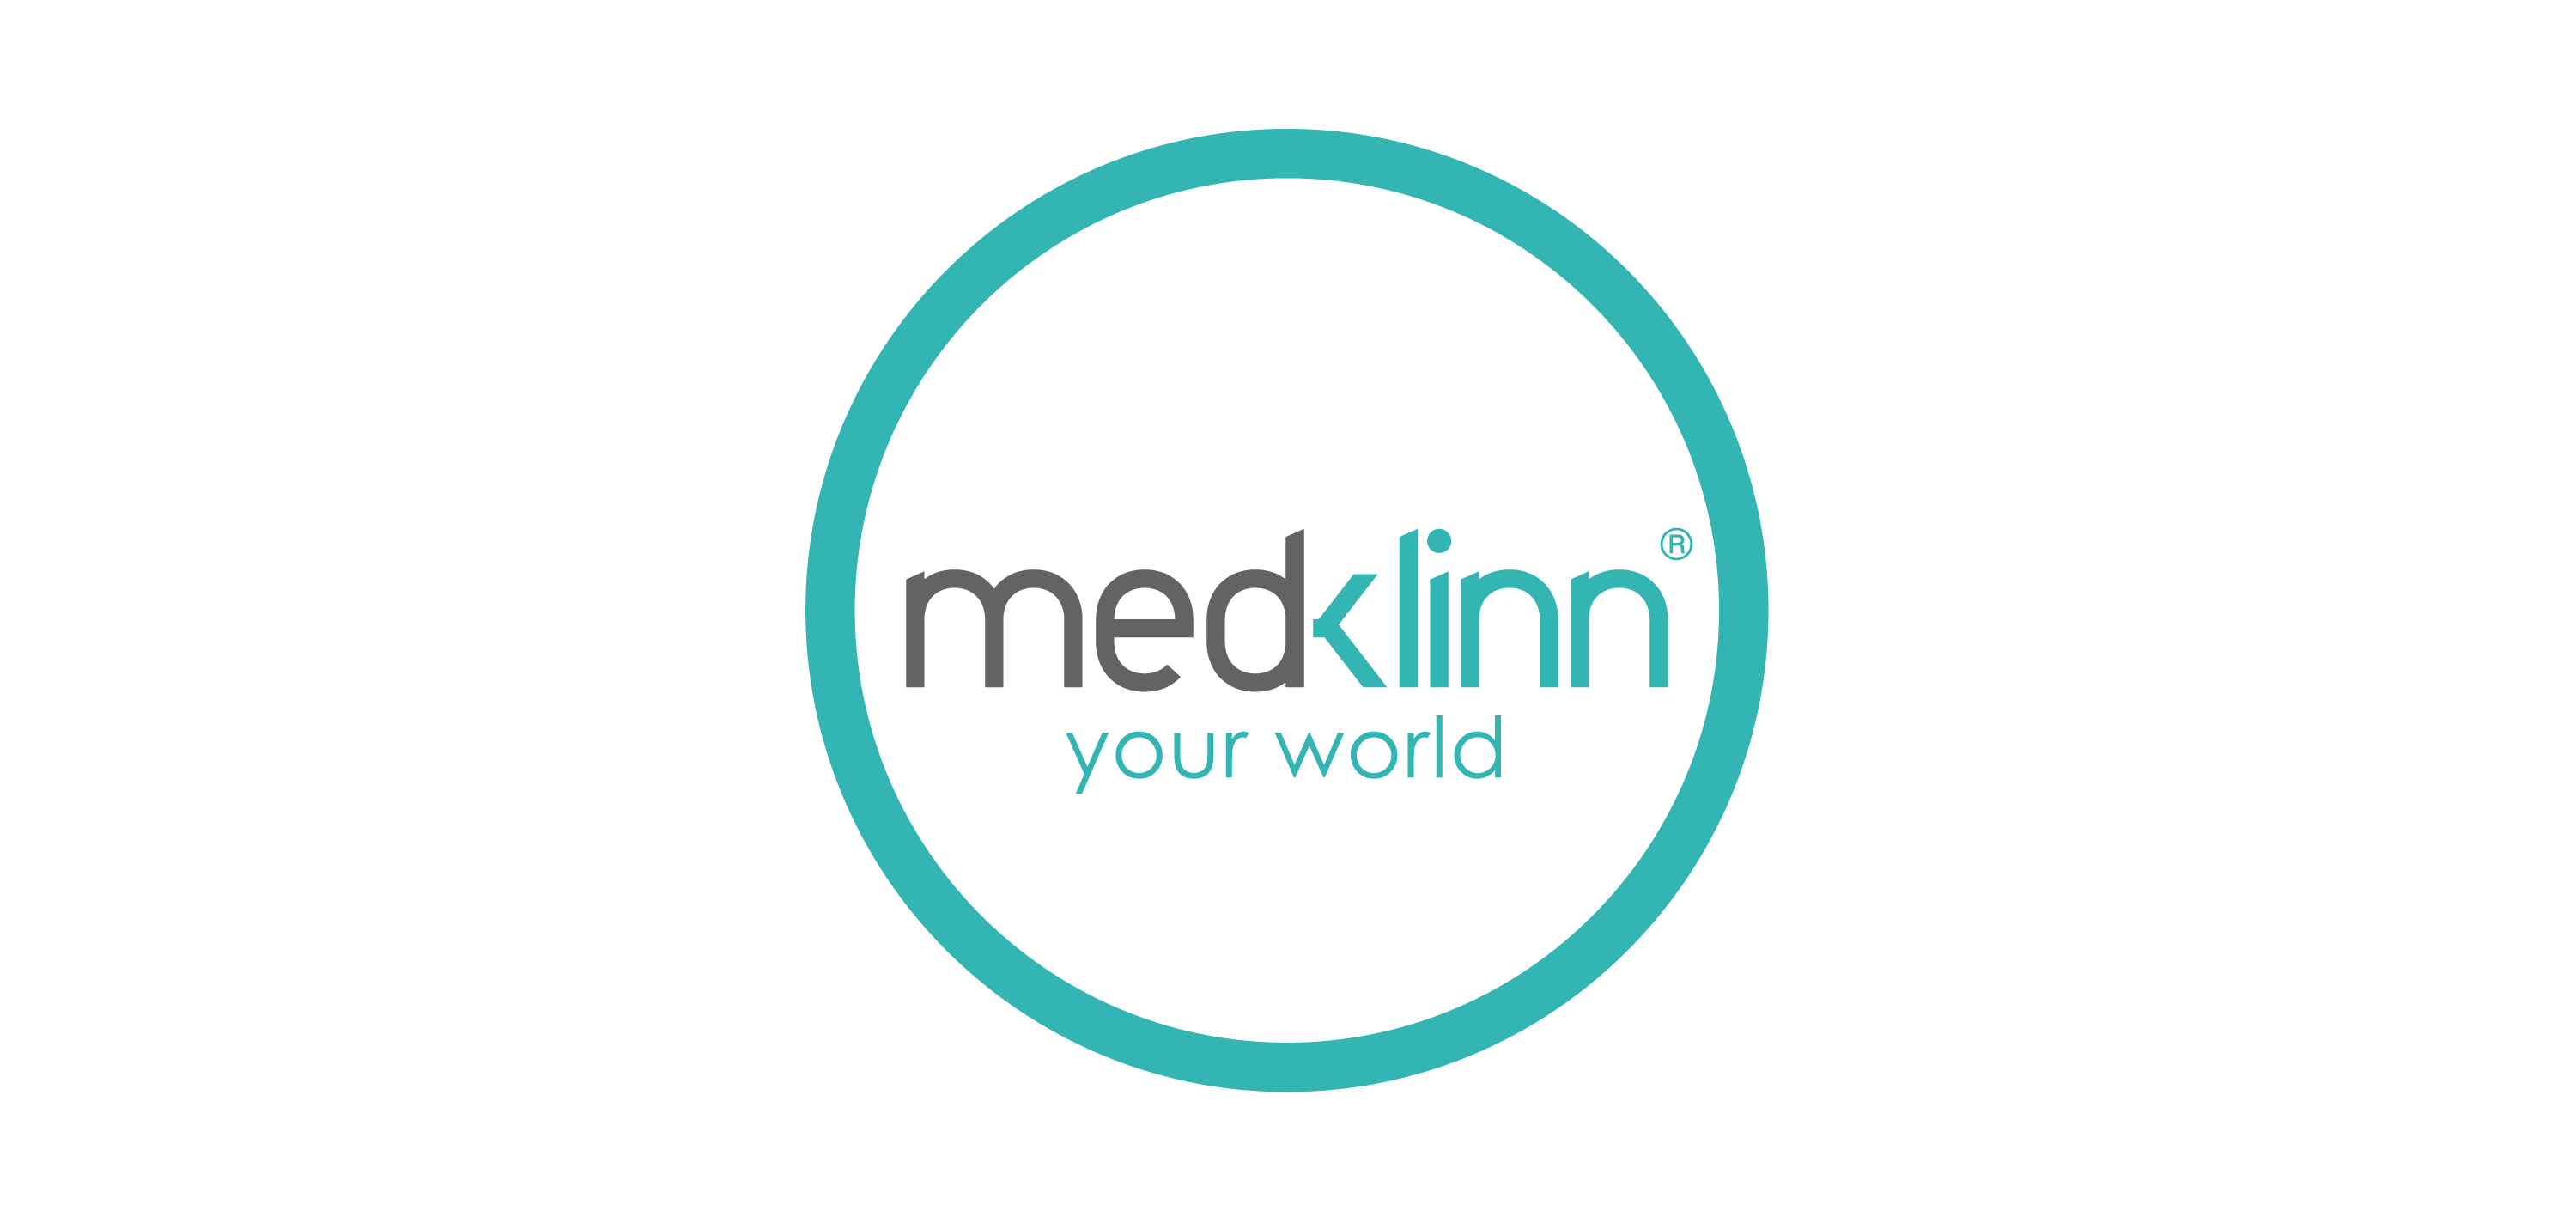 medklinn Logo Vector Download